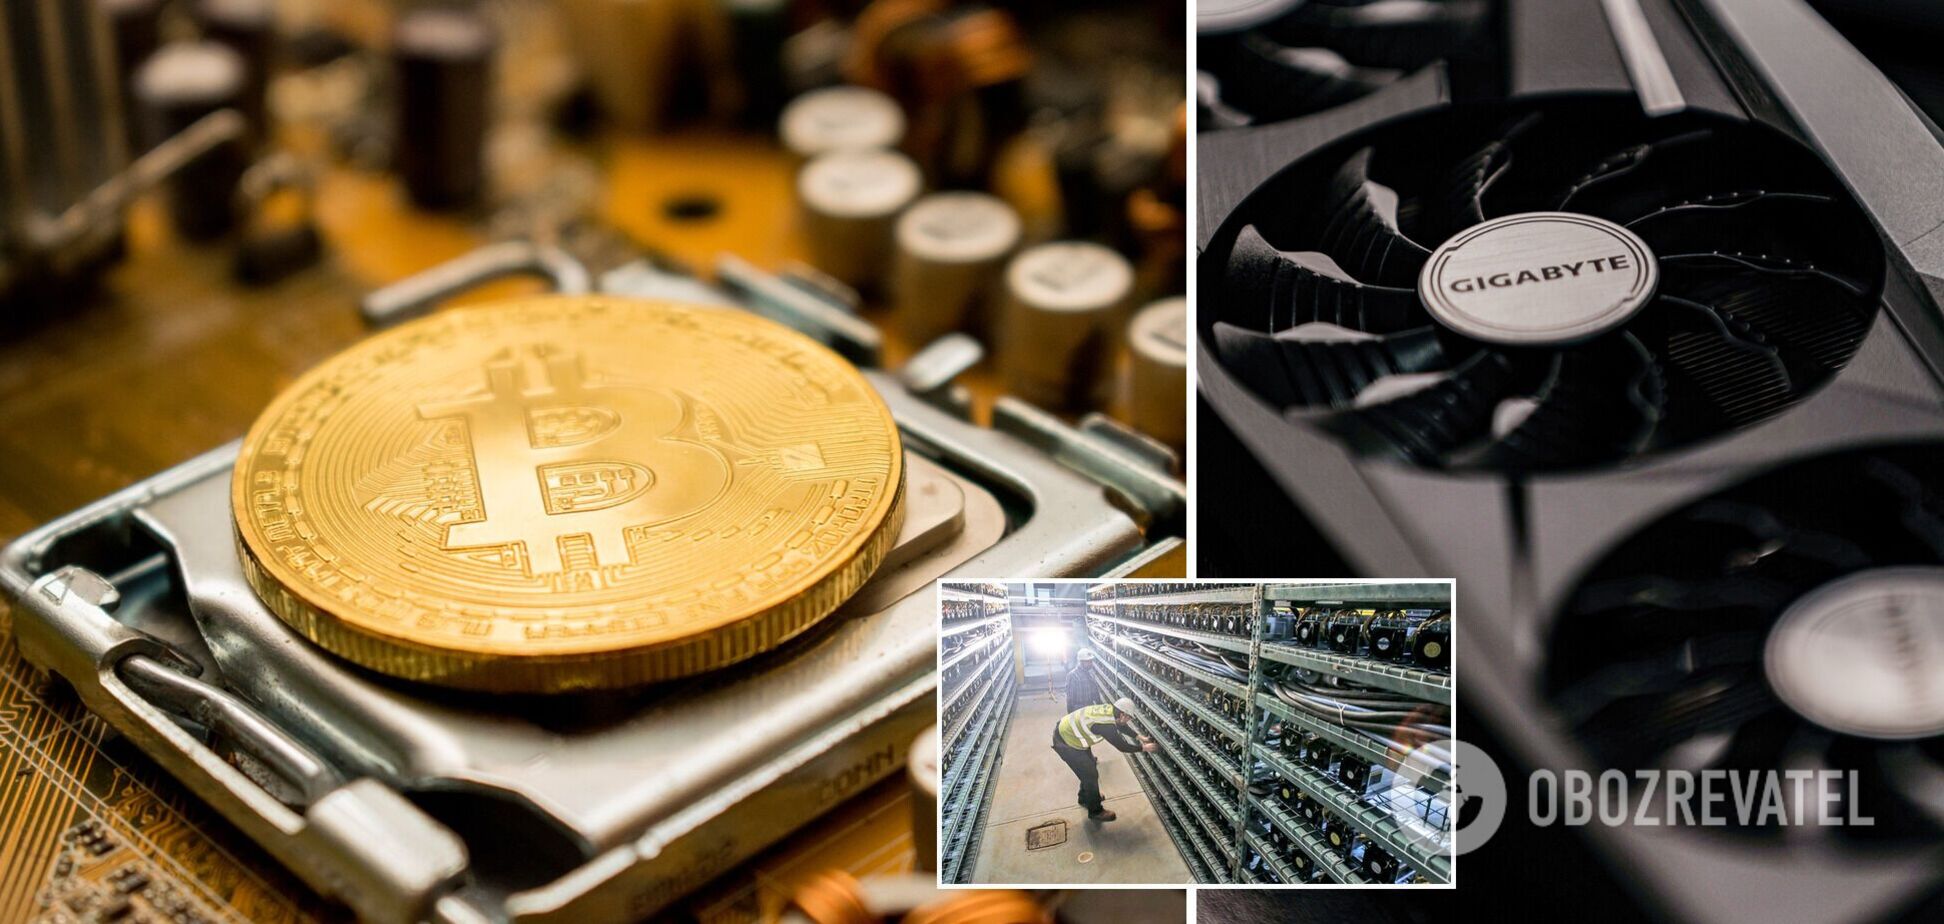 Биткоин-фермы вынуждены распродавать свои монеты и технику из-за обвала на рынке